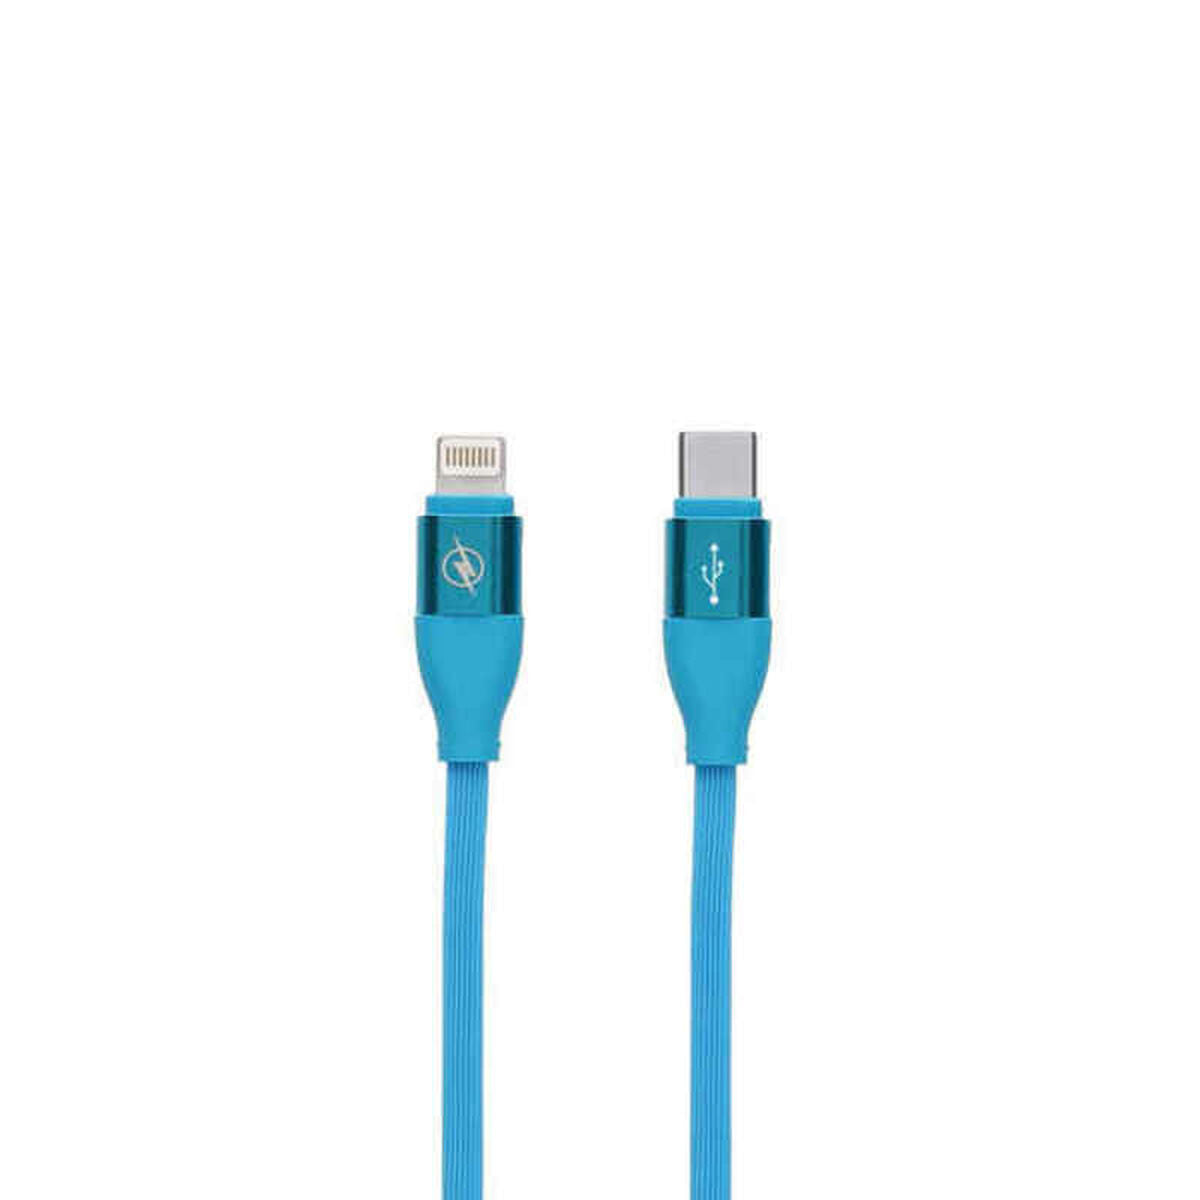 Daten-/Ladekabel mit USB-Kontakt LIGHTING Typ C Blau (1,5 m)